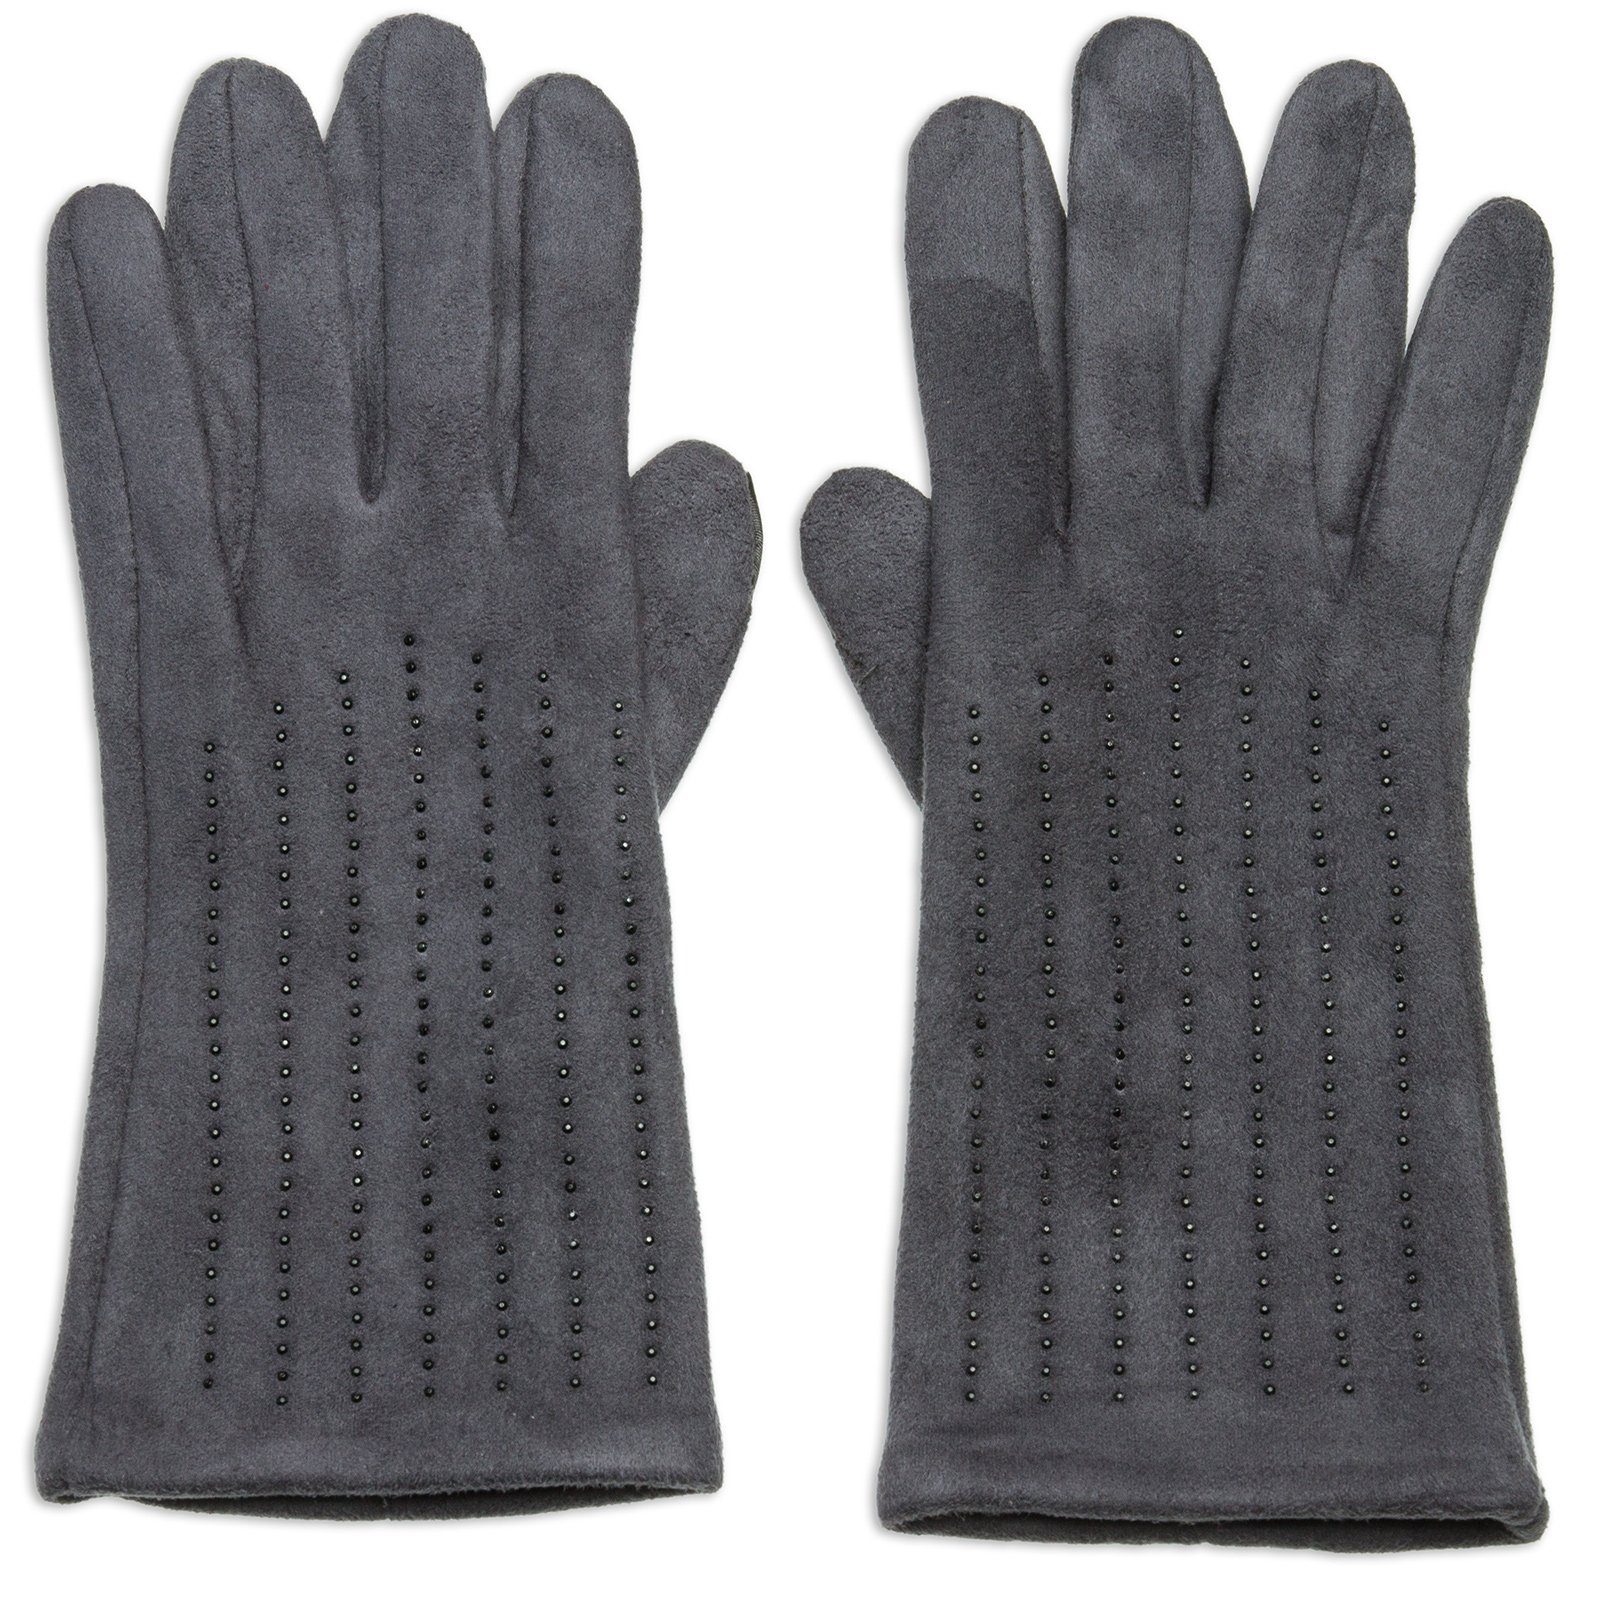 Caspar Strickhandschuhe GLV011 klassisch elegante Damen Handschuhe mit Strass Dekor und Touchscreen Funktion grau